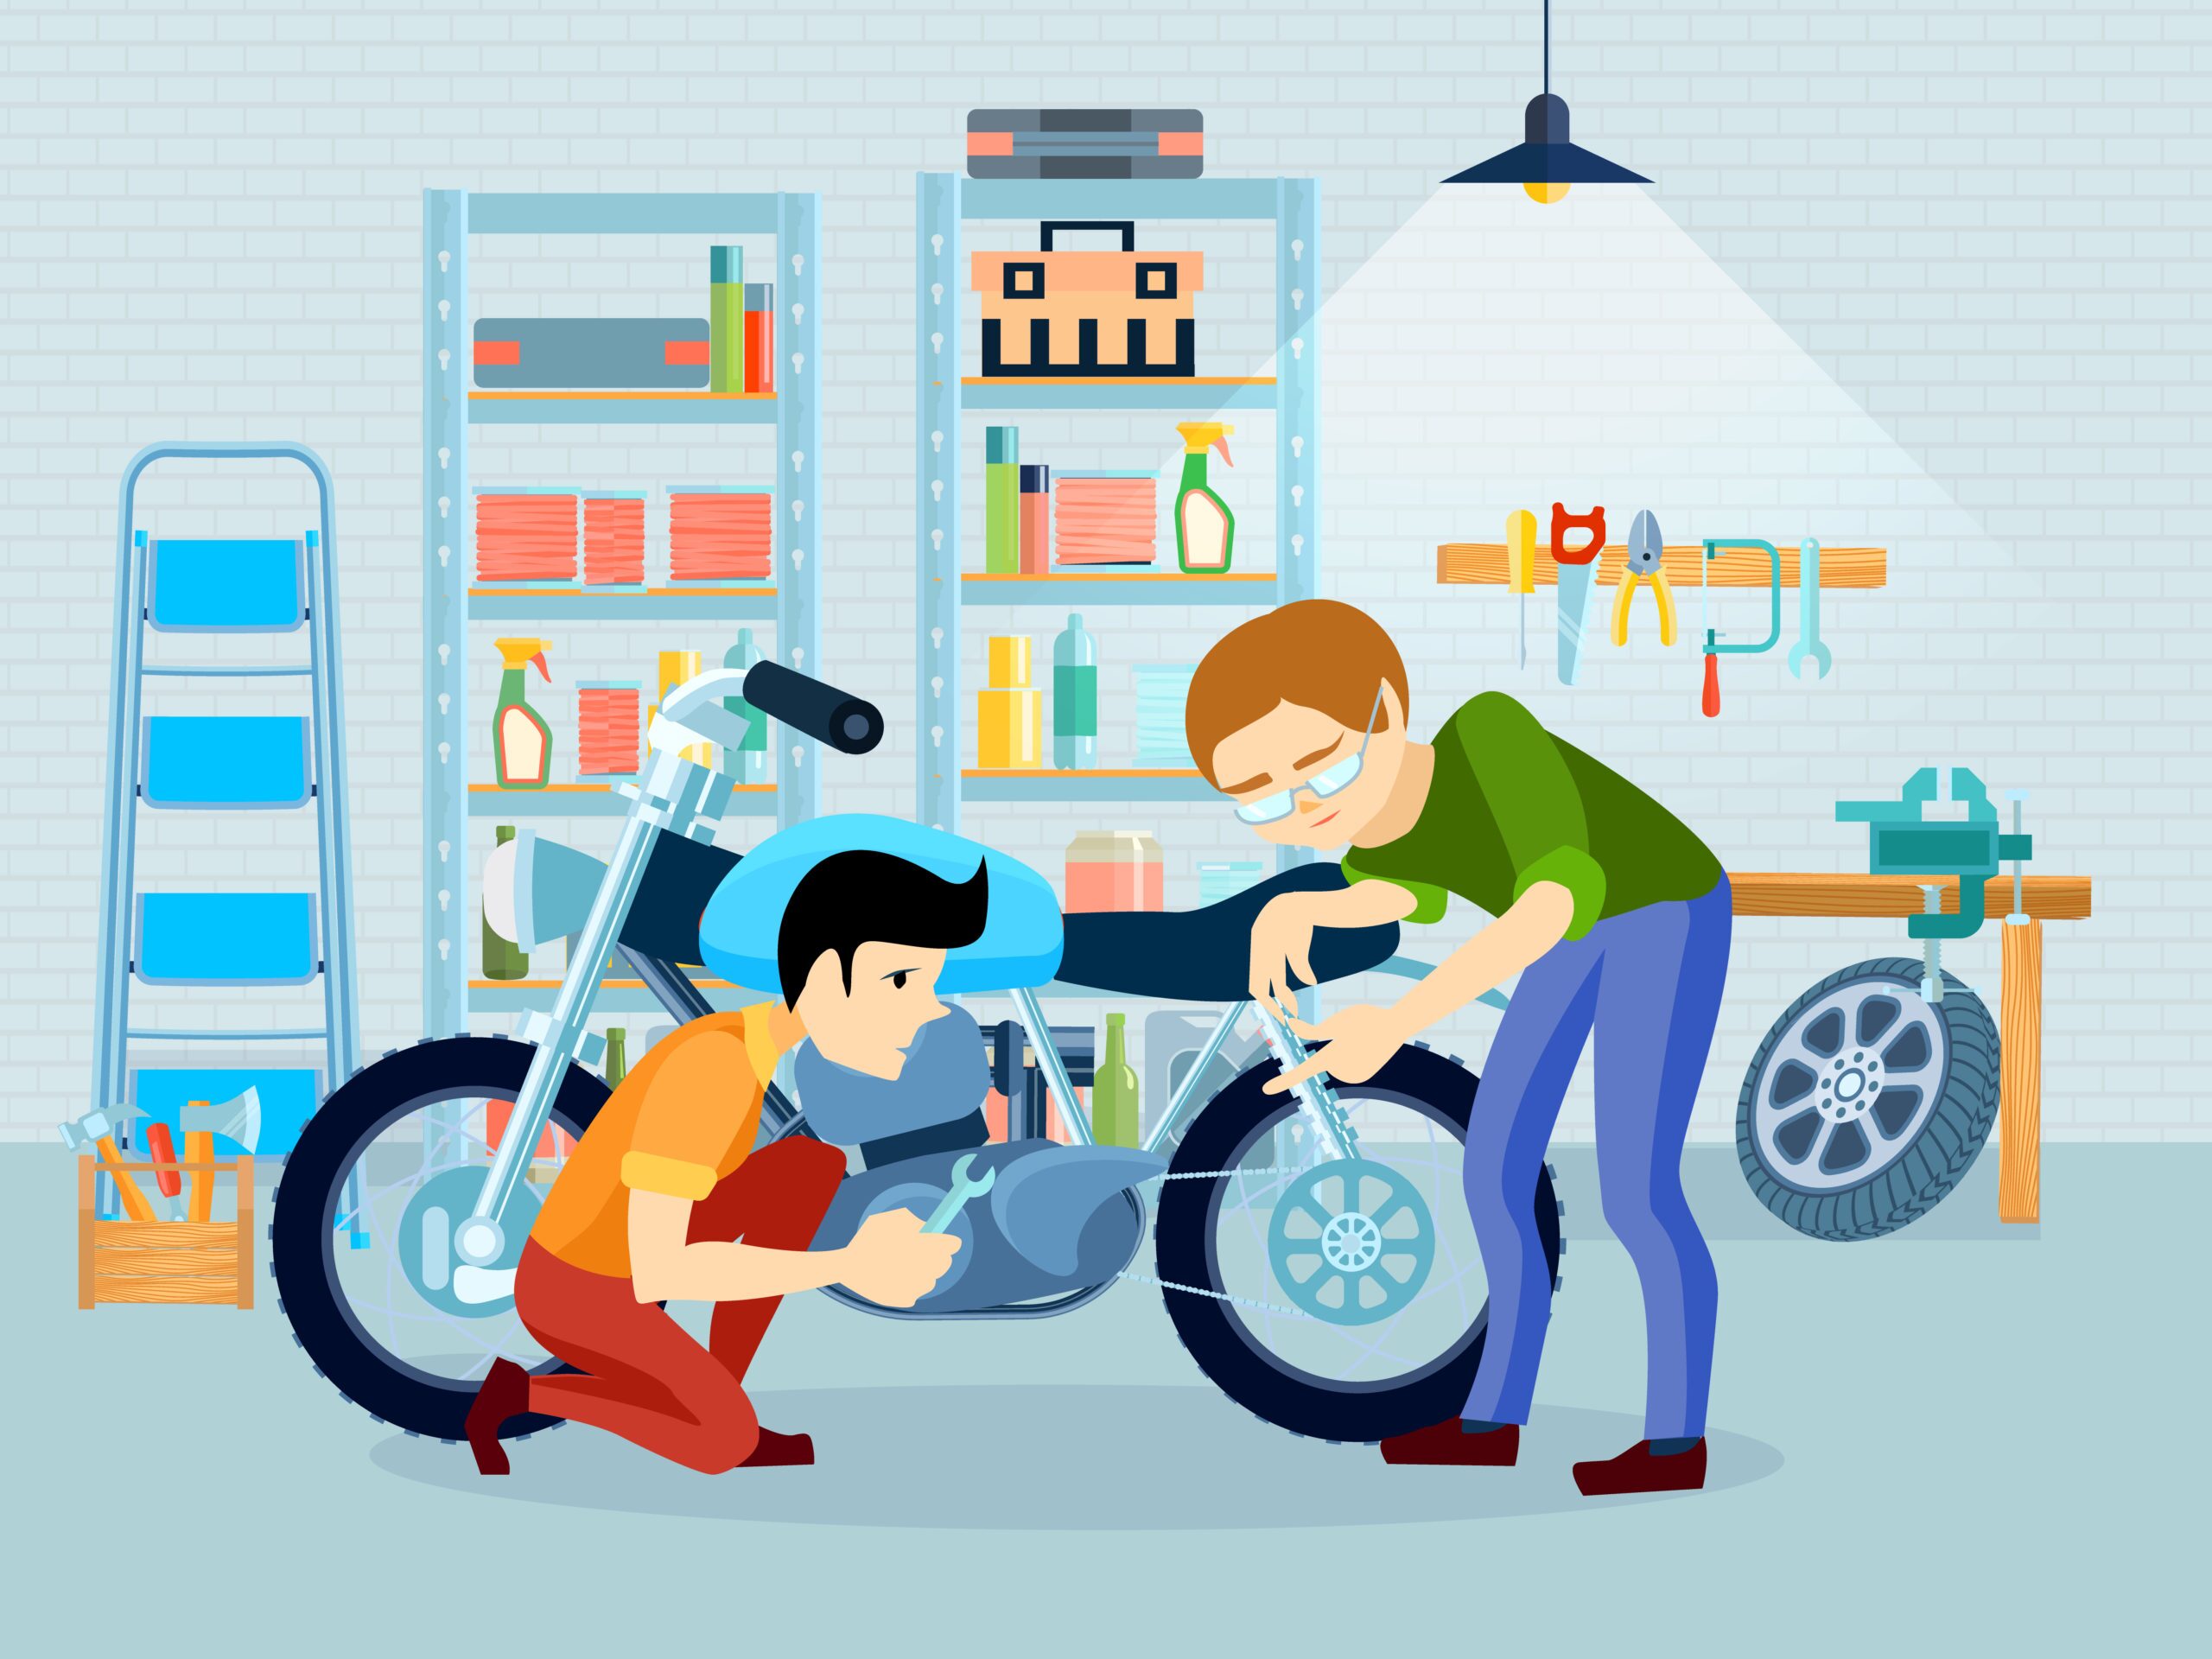 Mobile bike repair and maintenance service